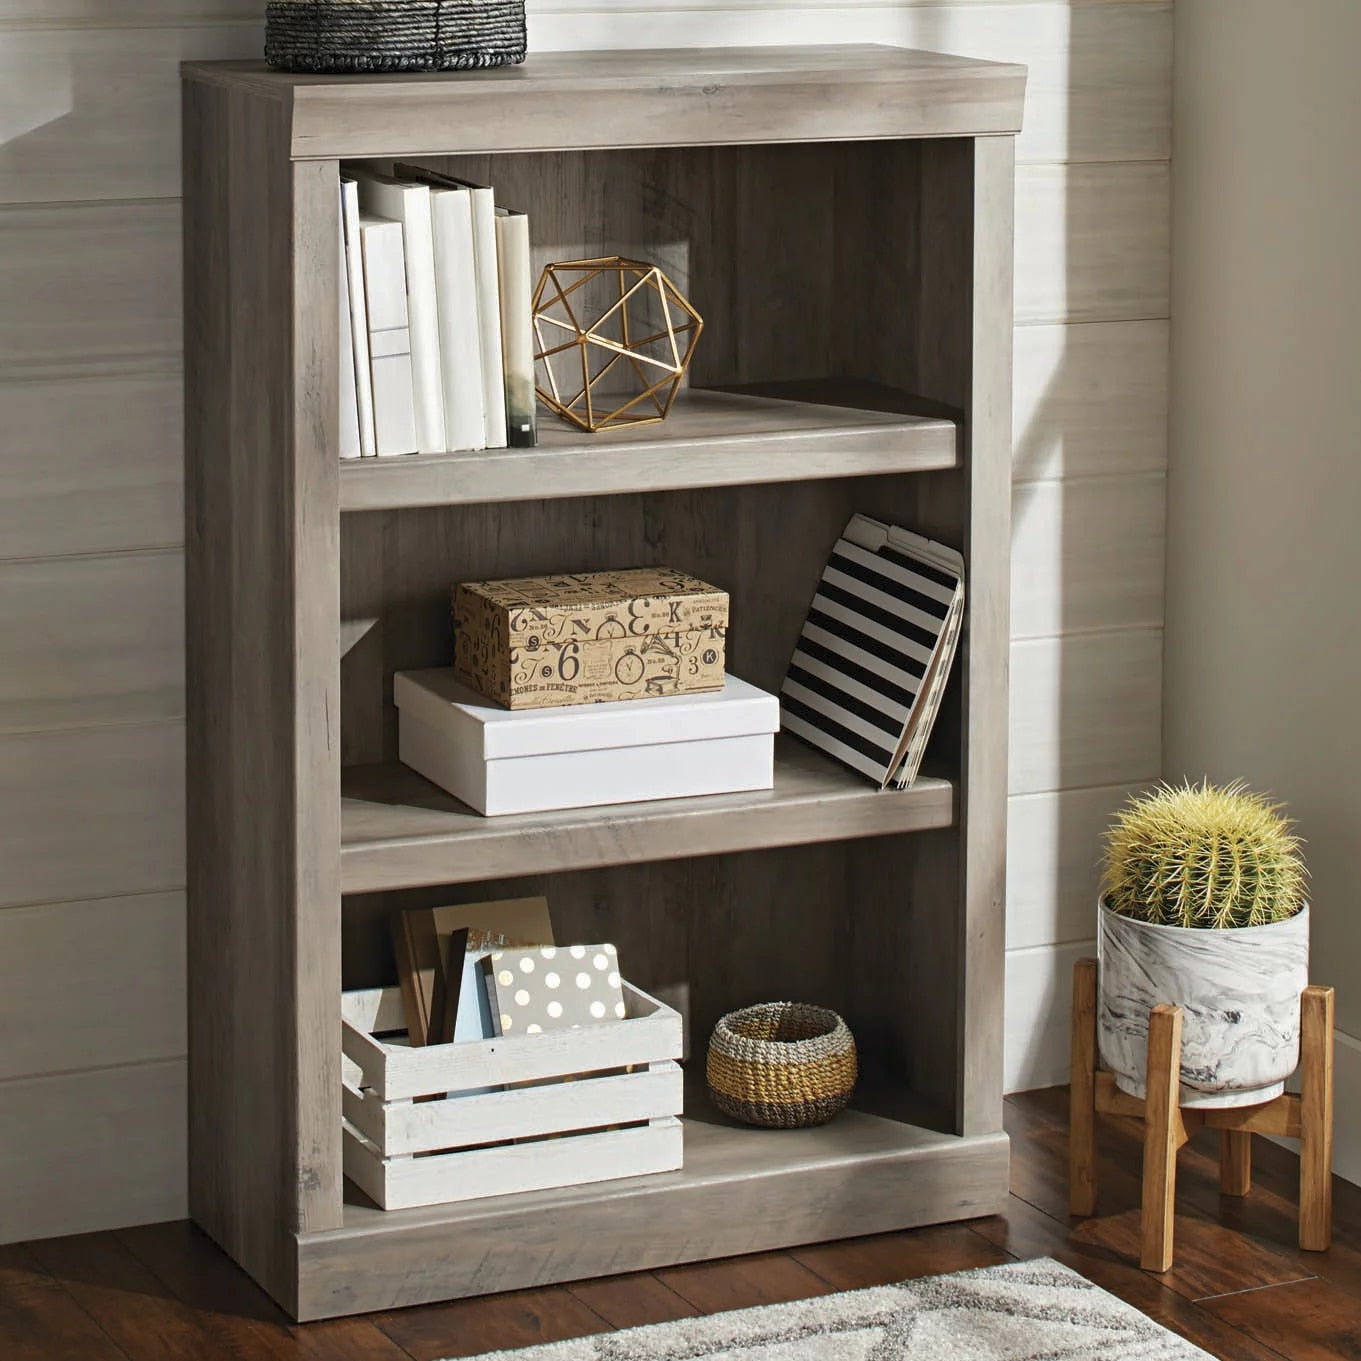 Better Homes & Gardens Glendale 3 Shelf Bookcase, Rustic Gray Finish desk bookshelf